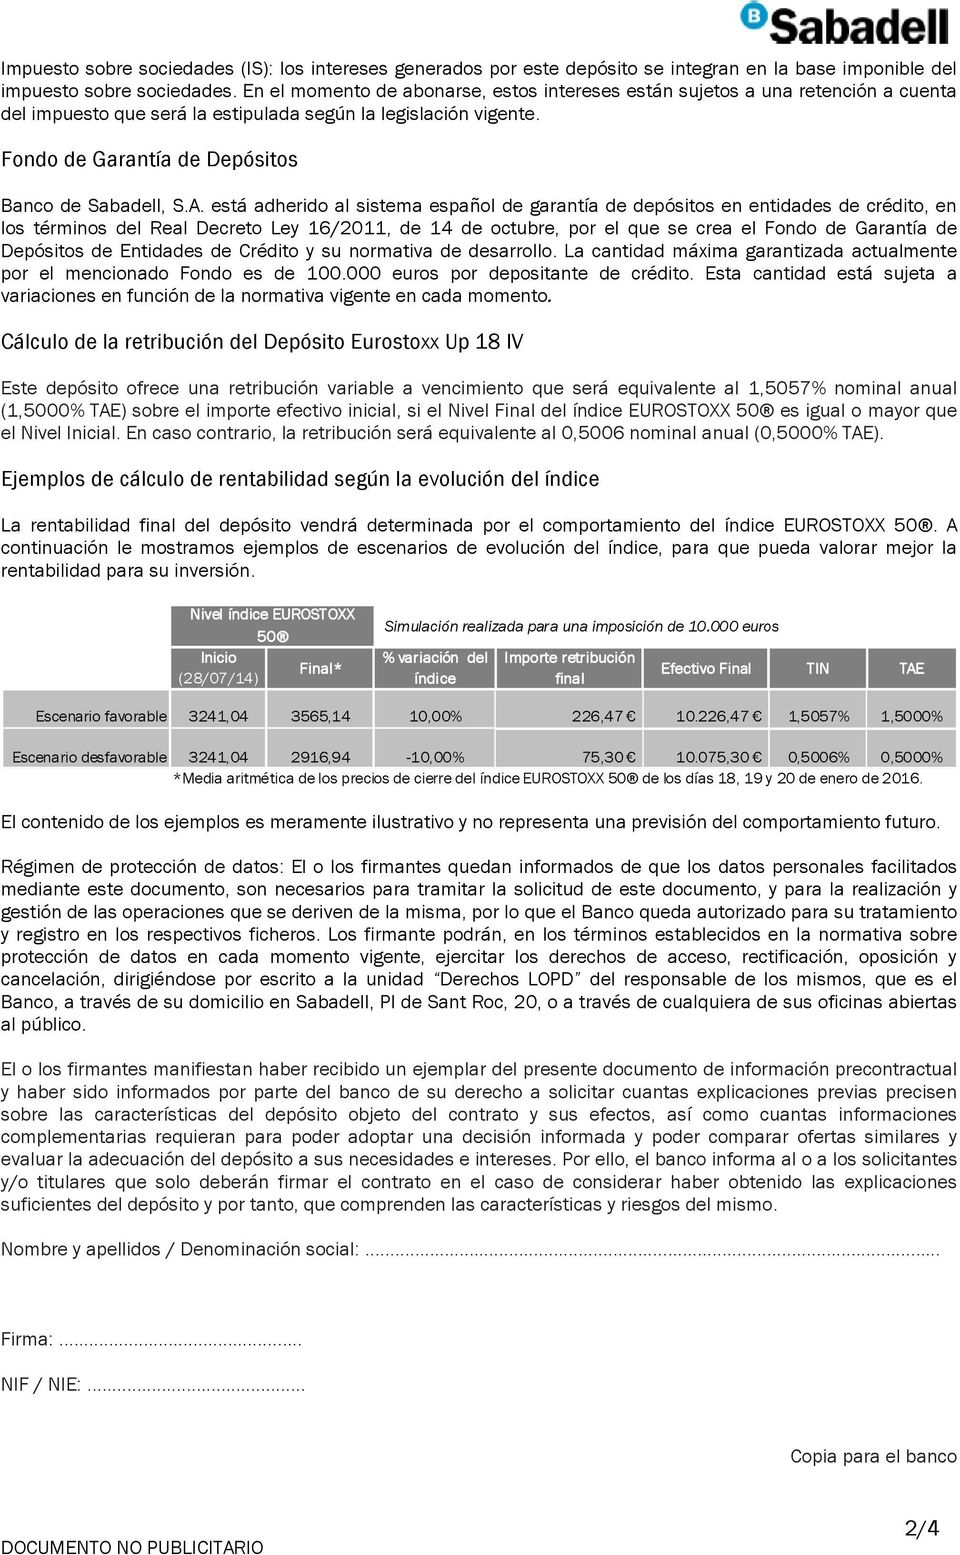 A. está adherido al sistema español de garantía de depósitos en entidades de crédito, en los términos del Real Decreto Ley 16/2011, de 14 de octubre, por el que se crea el Fondo de Garantía de